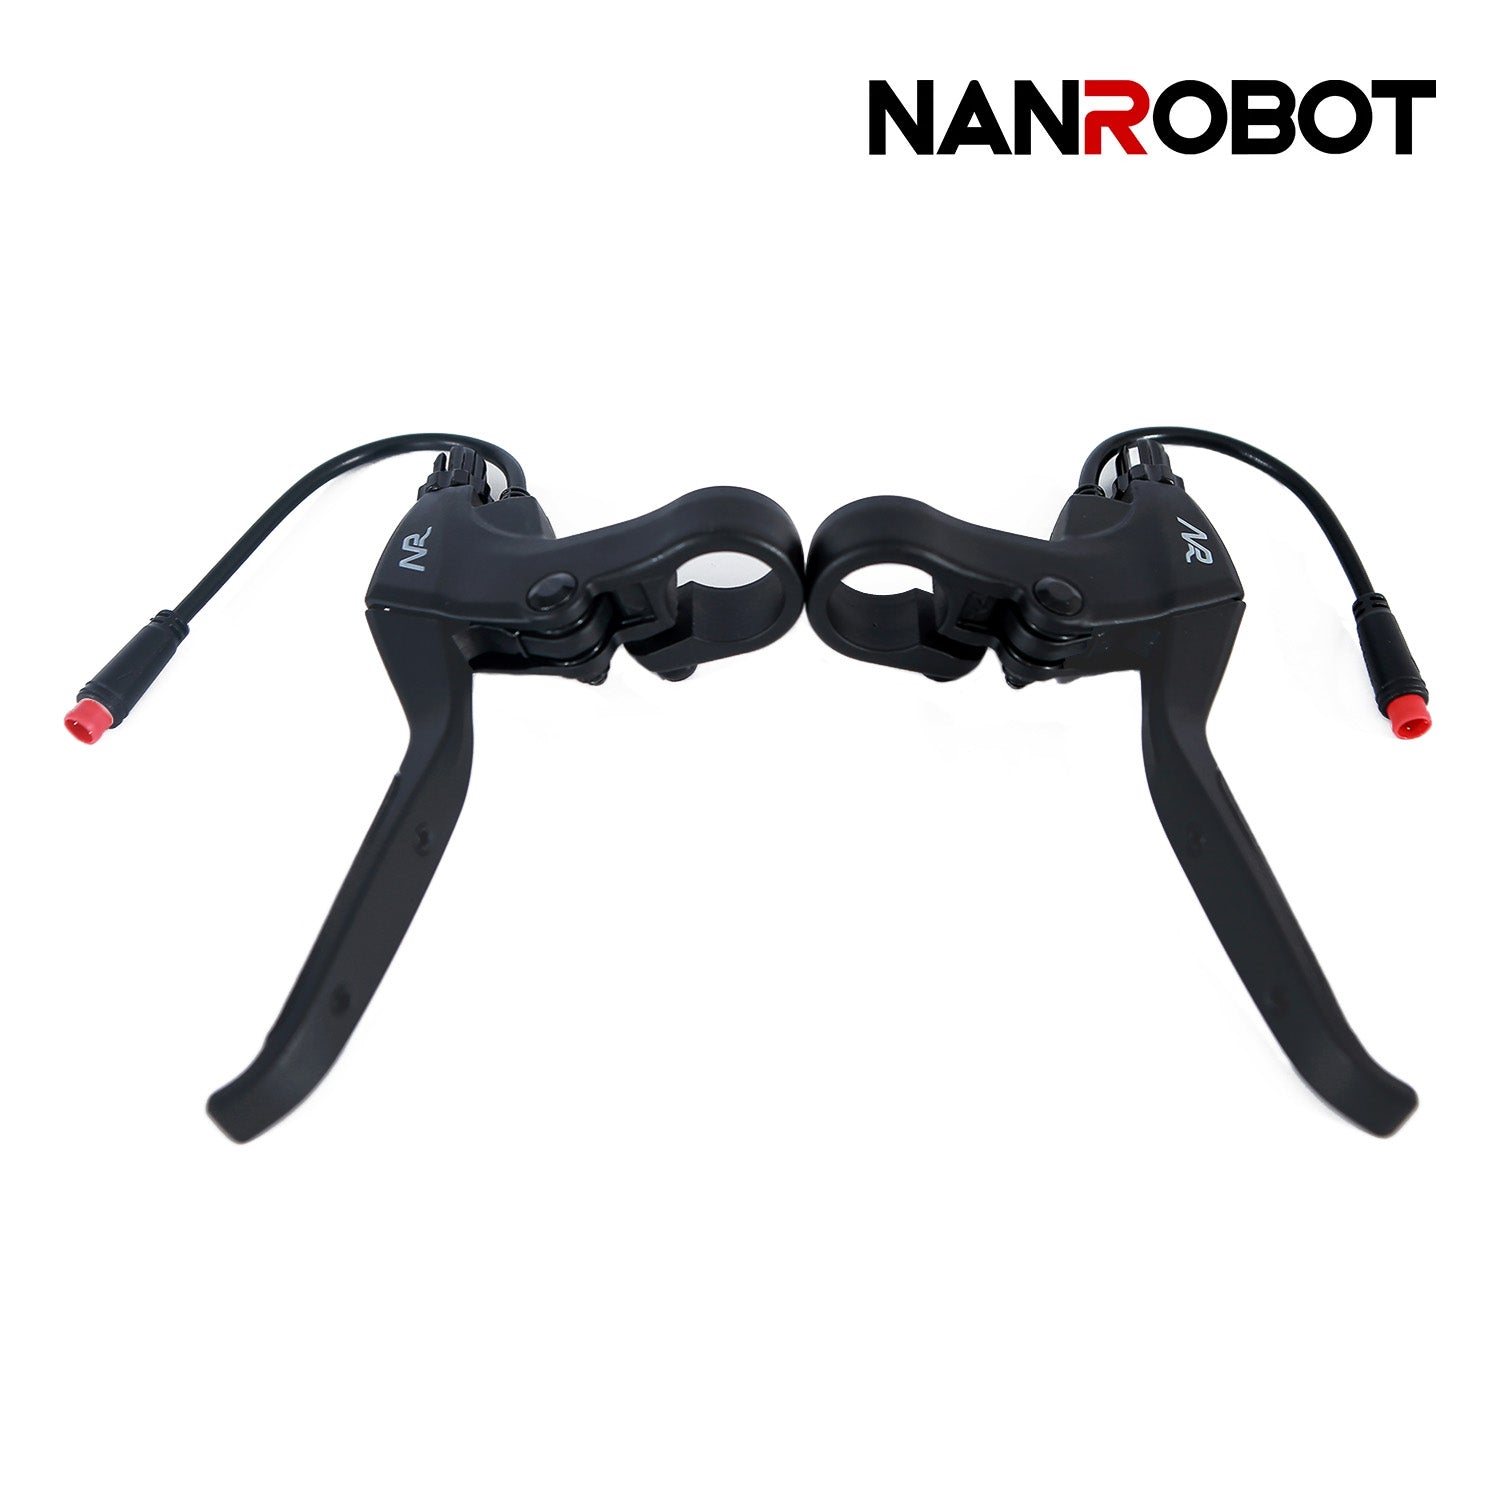 NANROBOT Electric Scooter Brake Handle - NANROBOT